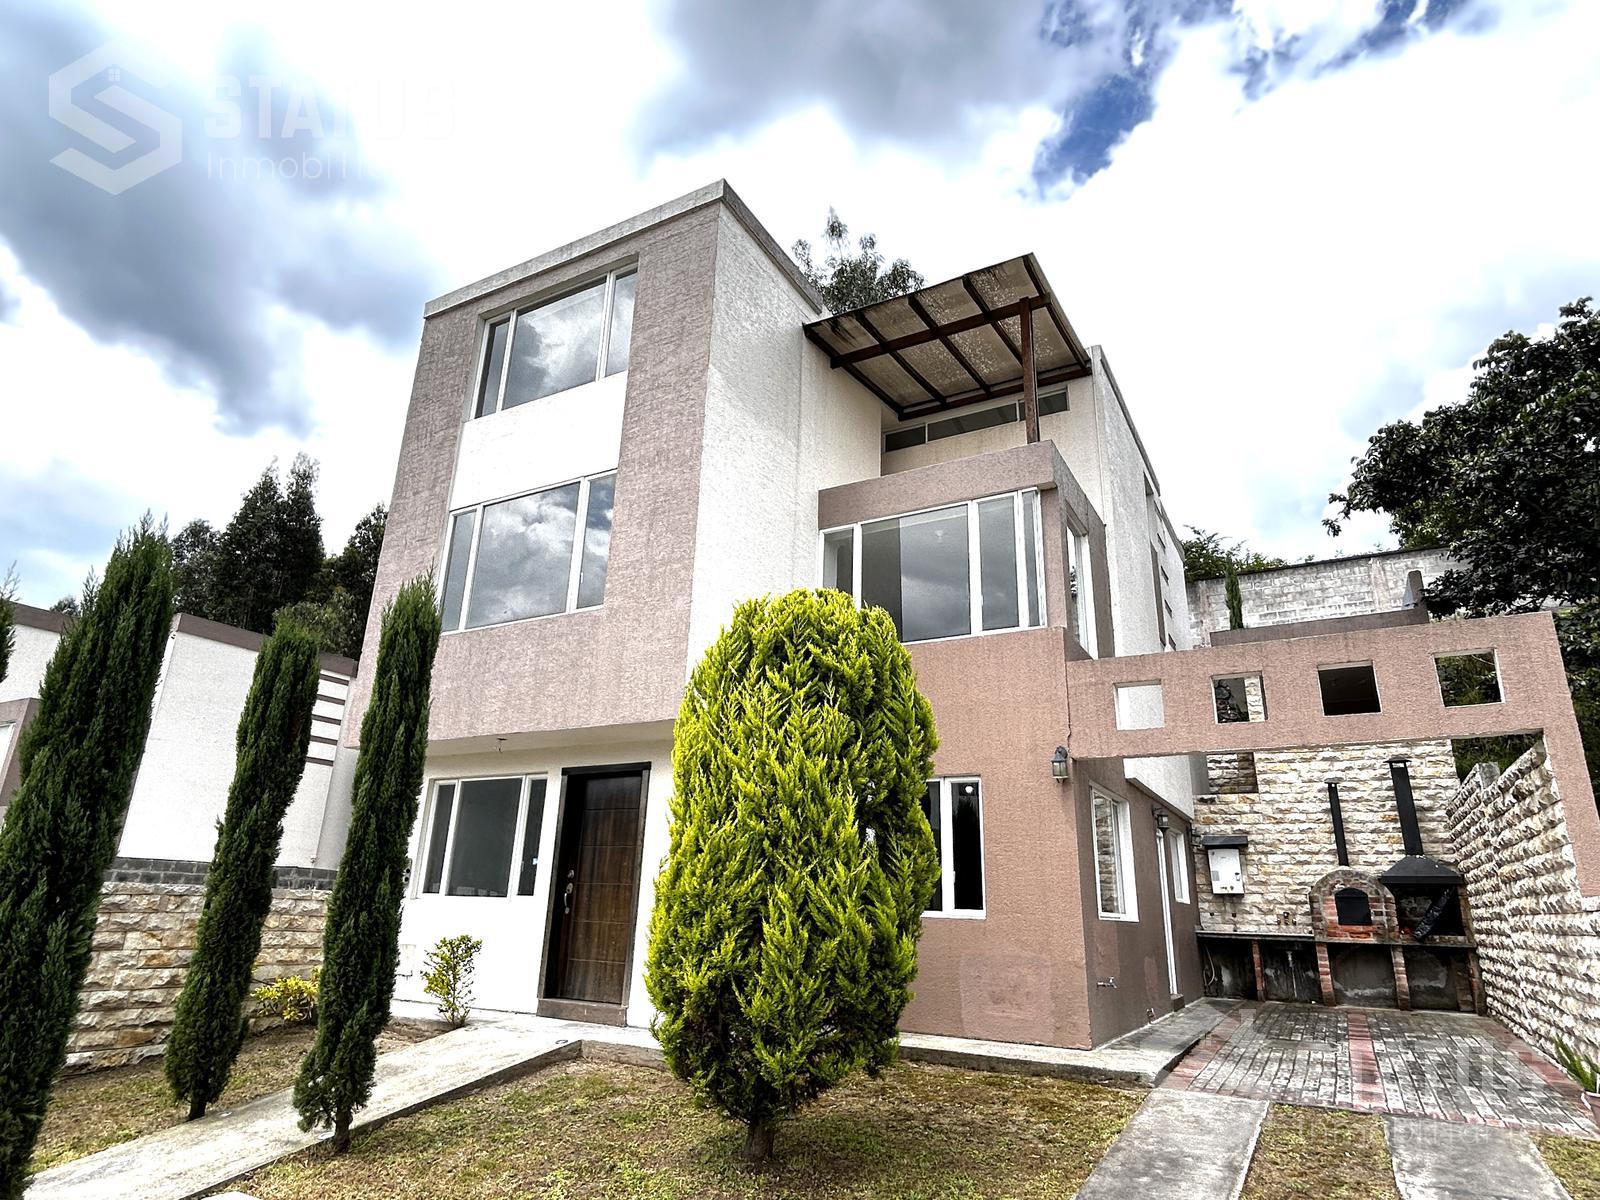 Vendo casa en conjunto sin adosamiento, sector Ushimana, 4 Dorm., 2 Garajes, patio, 247 m, $150.000